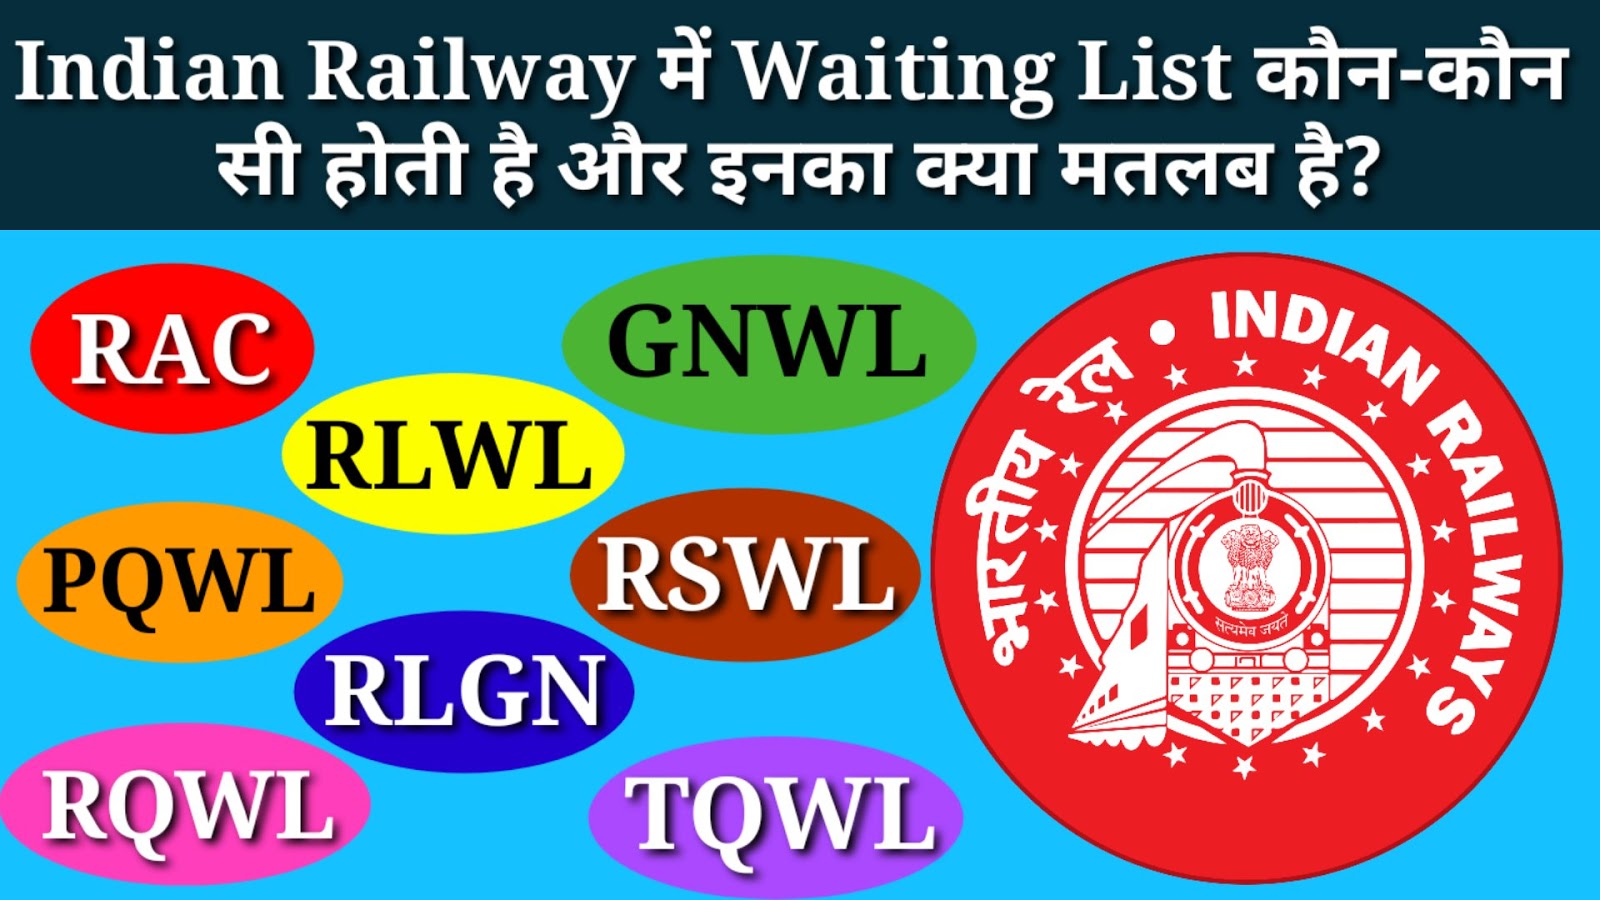 What is Waiting List RAC, GNWL, RLWL, RLGN, PQWL, RSWL